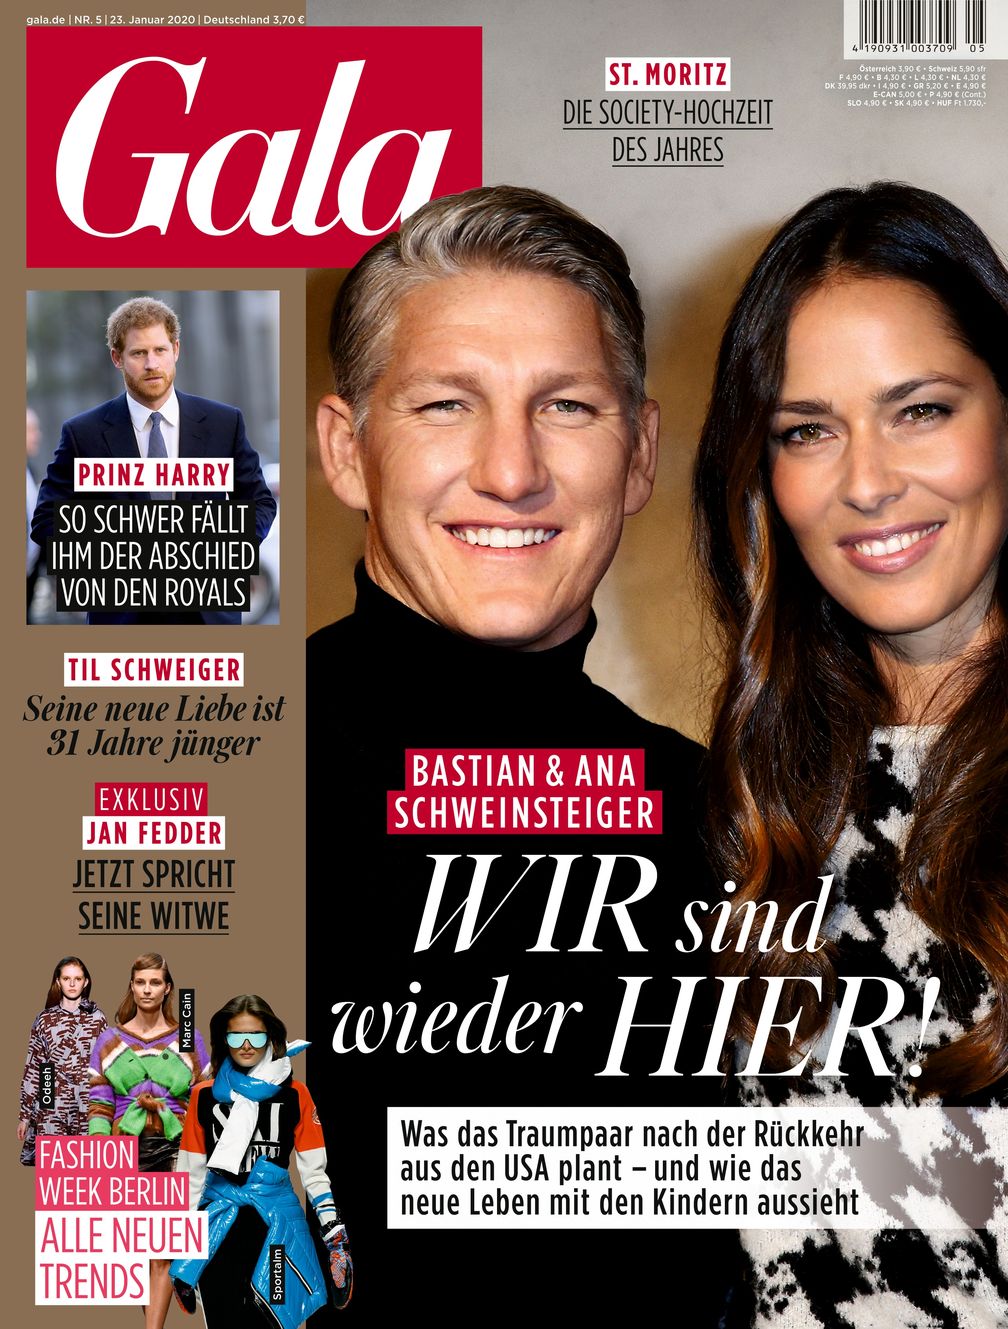 GALA Cover 5/2020 (EVT: 23. Januar 2020) Bild: "obs/Gruner+Jahr, Gala"